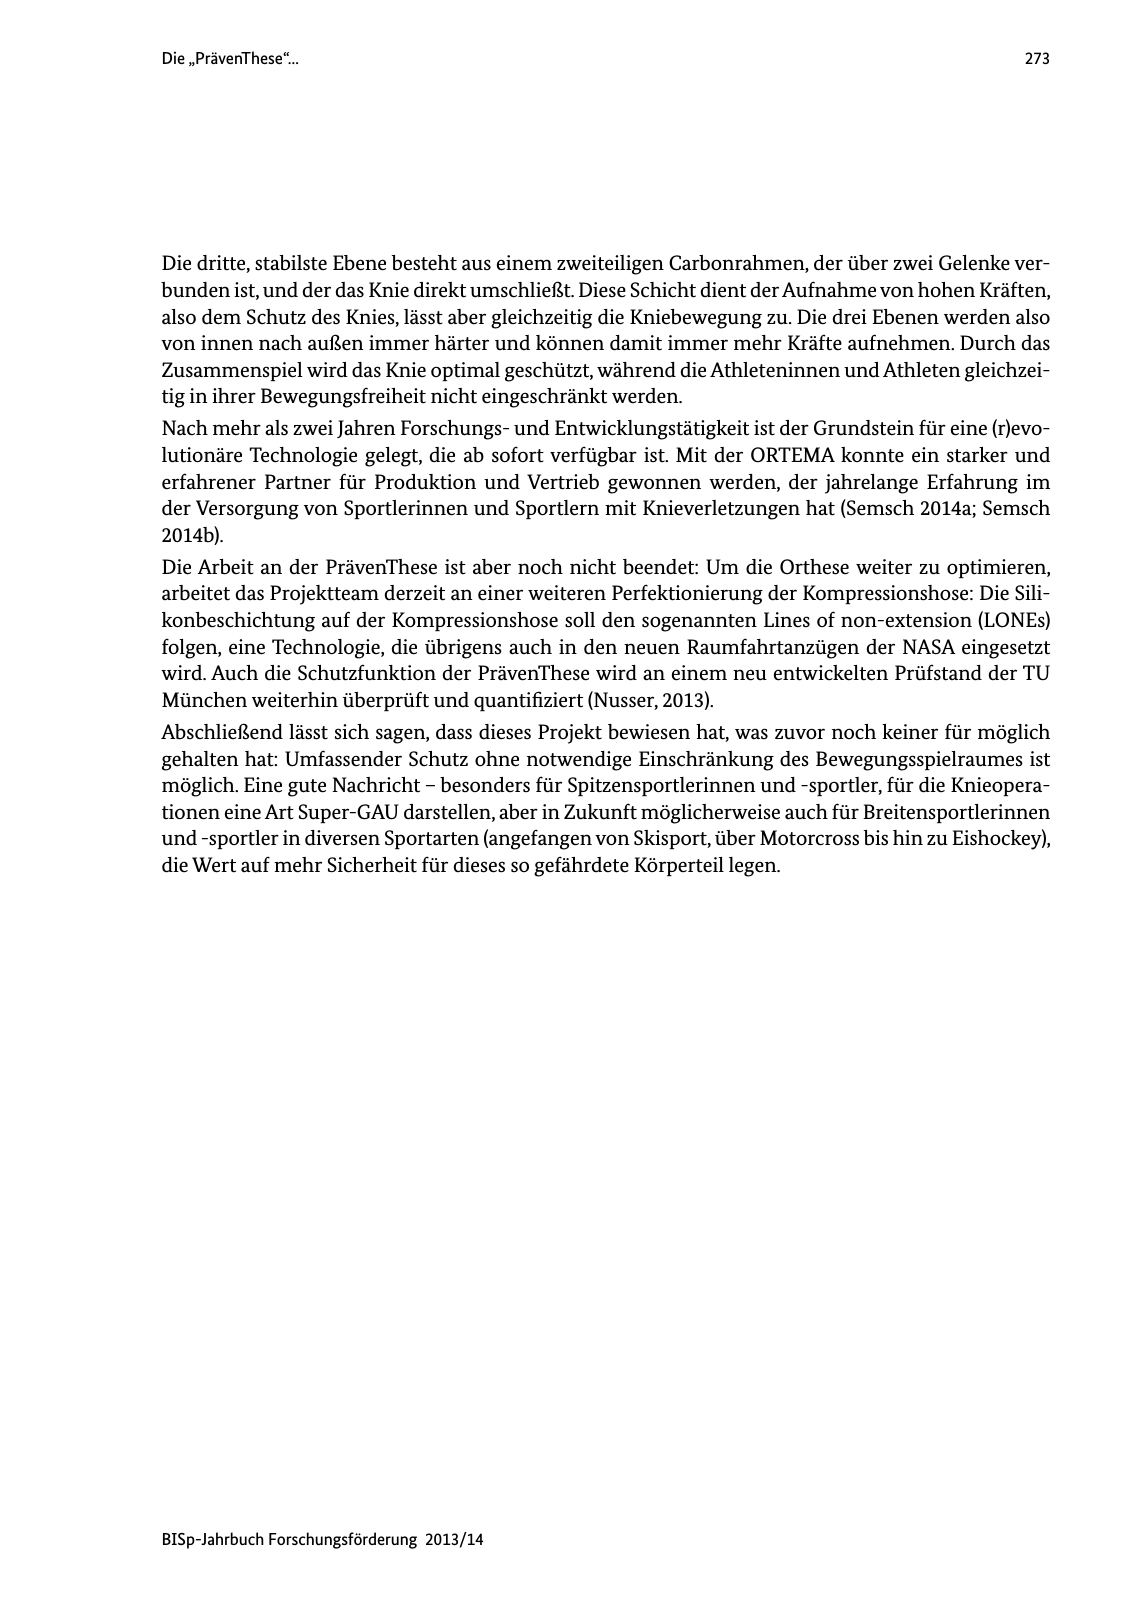 Vorschau BISp-Jahrbuch Forschungsförderung 2013/14 Seite 274